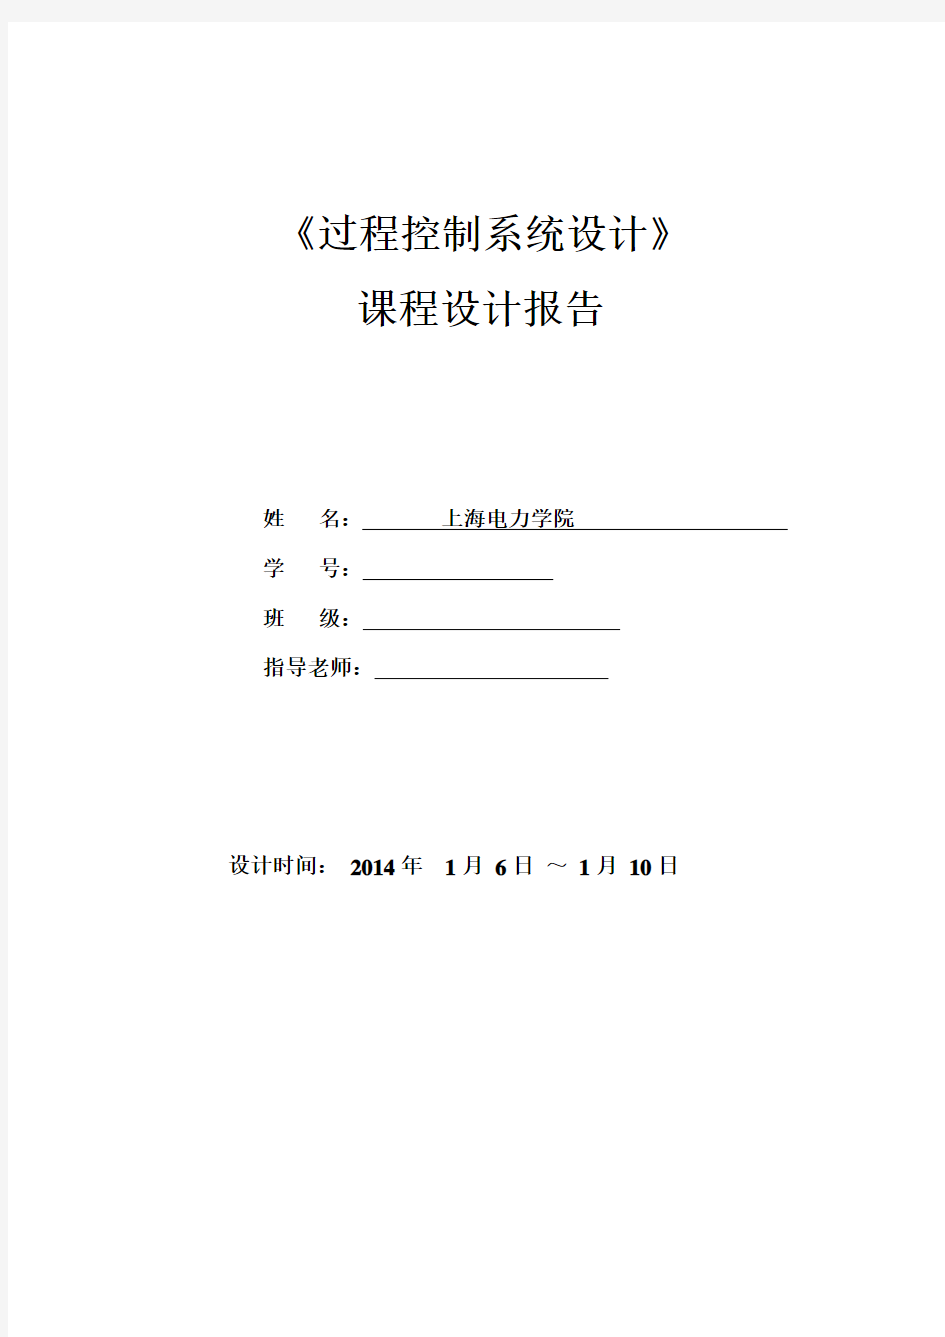 过控课程设计报告(上海电力学院)DOC